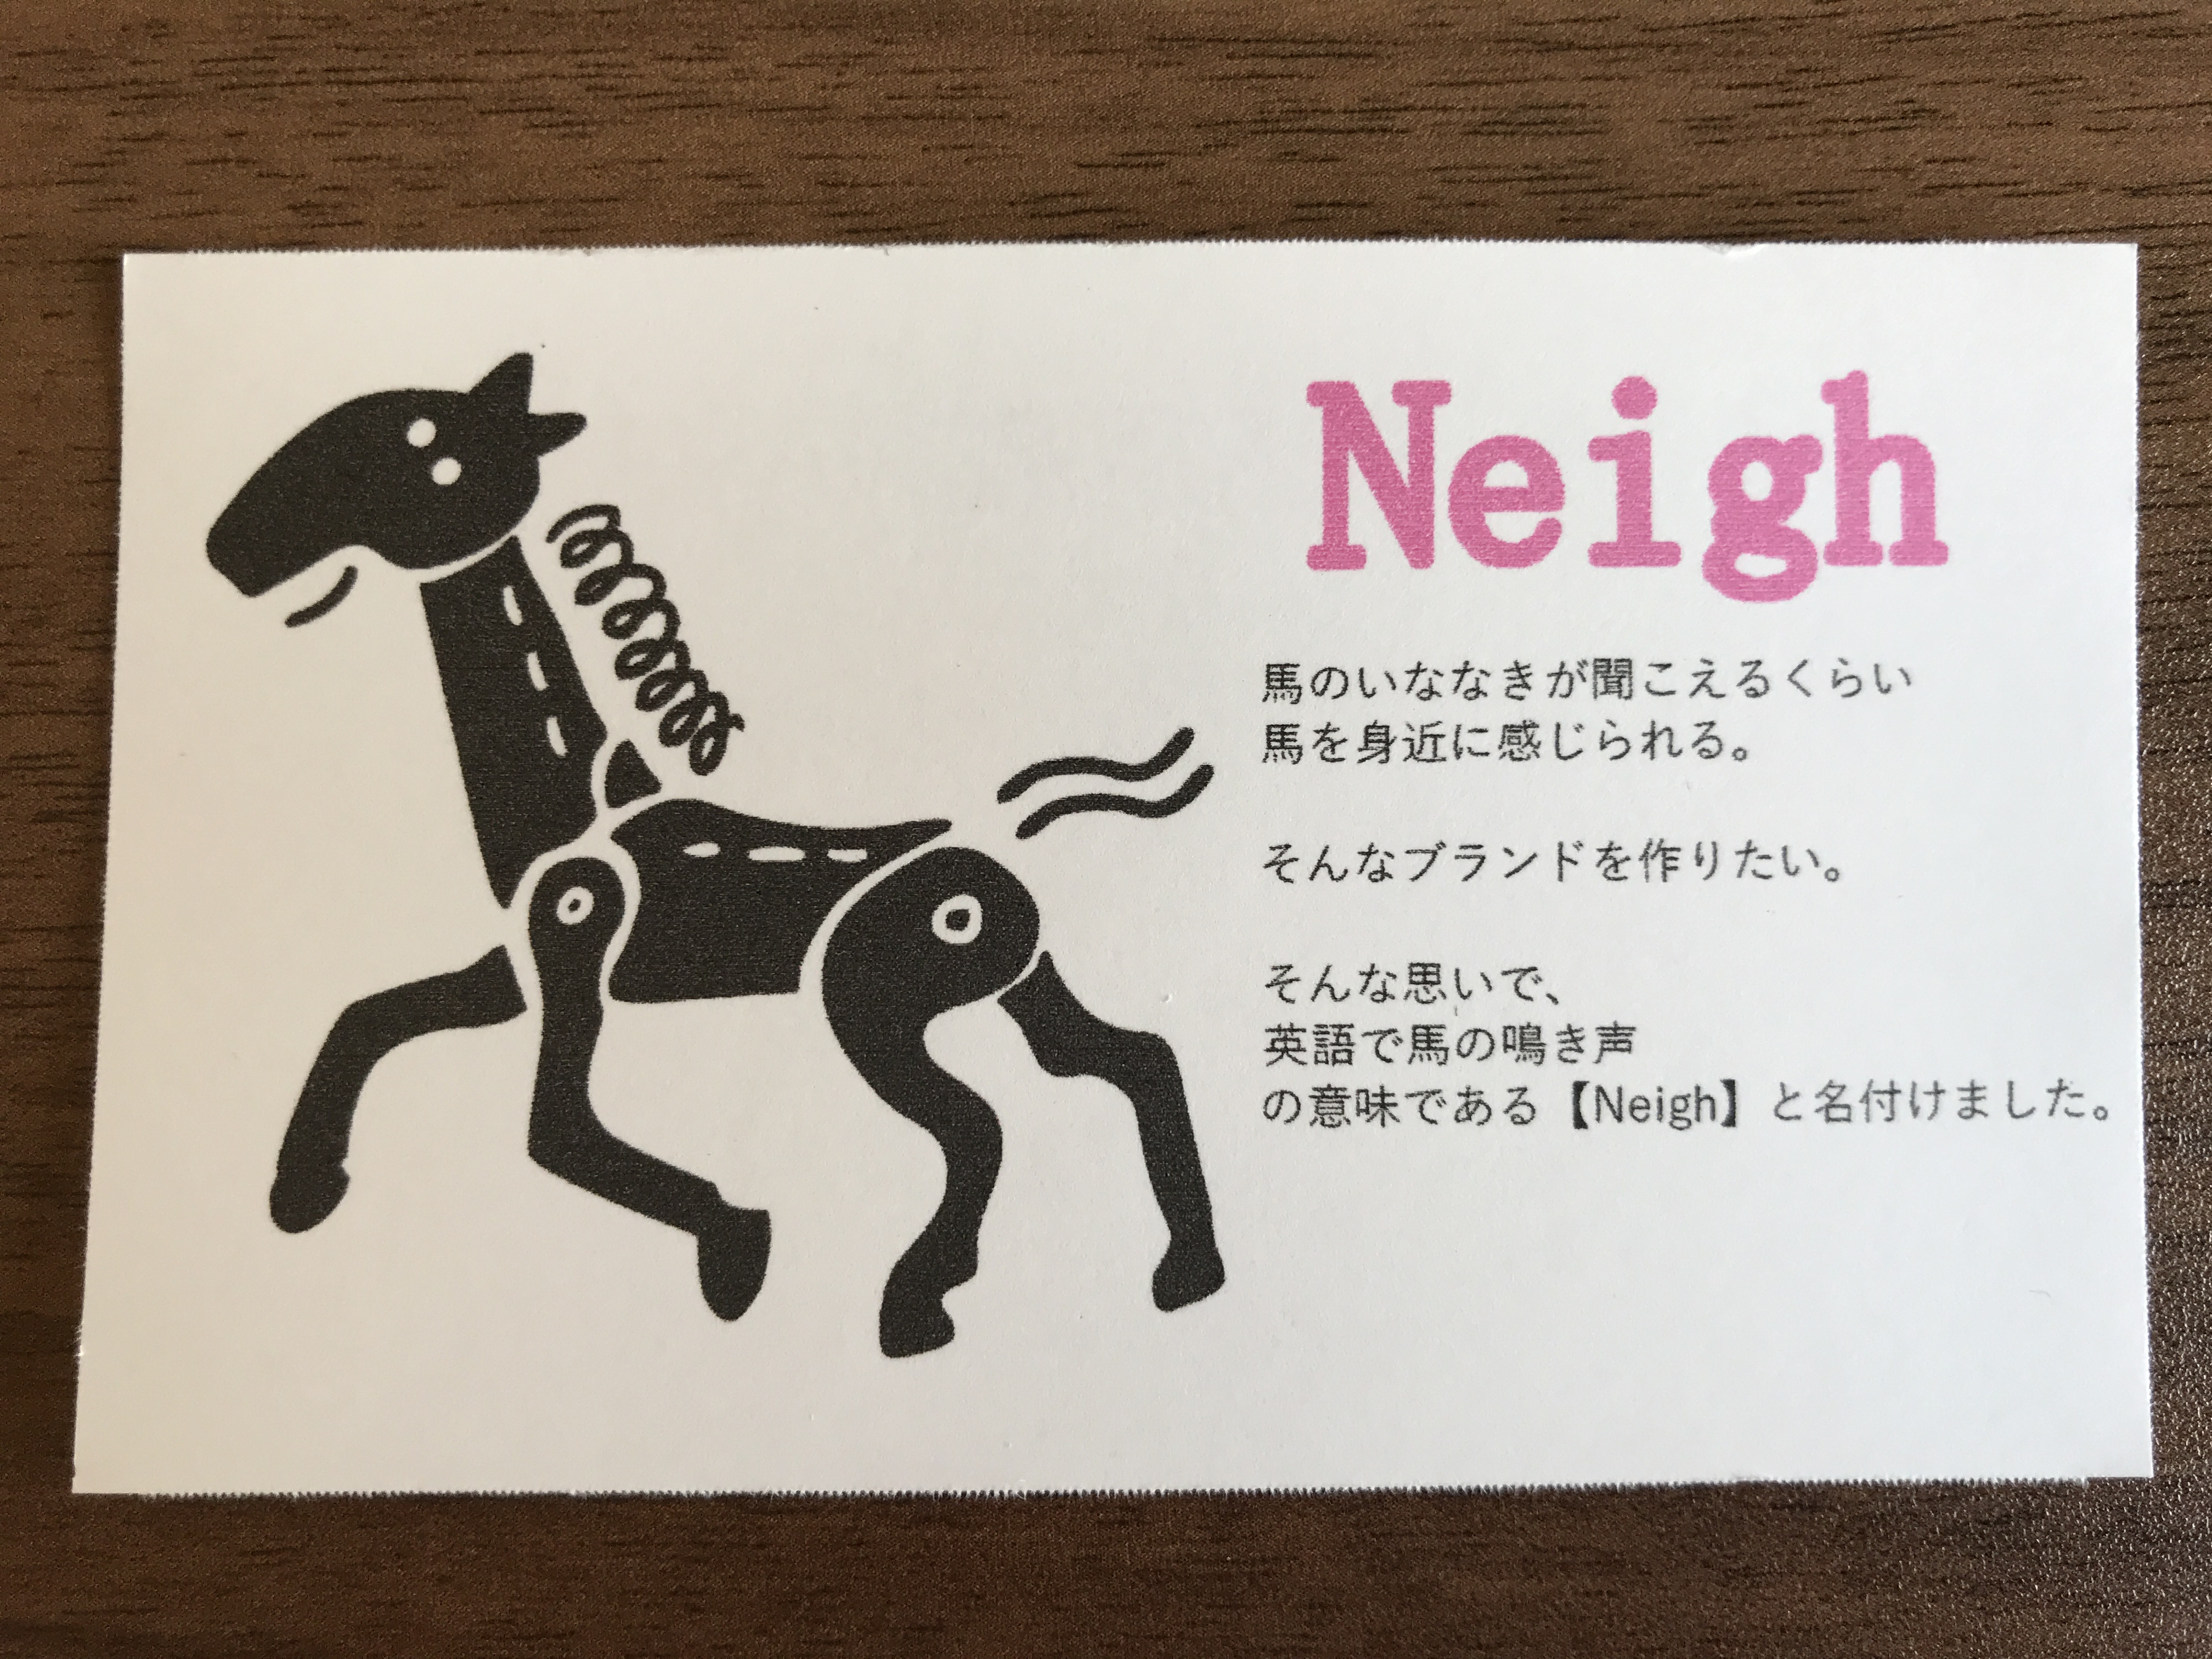 【Neigh】について